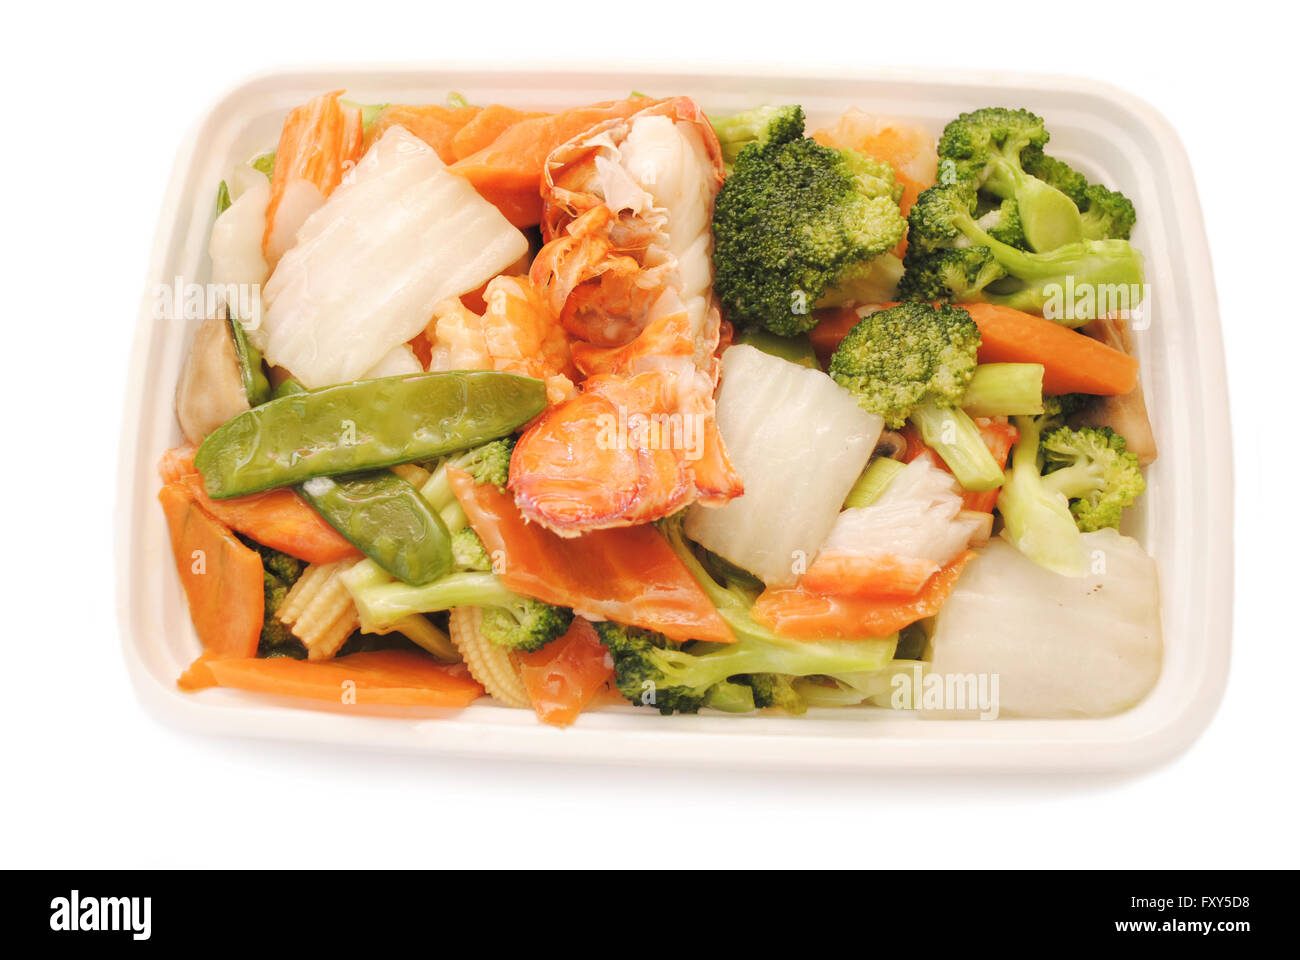 Asporto cinese (americano) - Specialità pesce con verdure Foto Stock